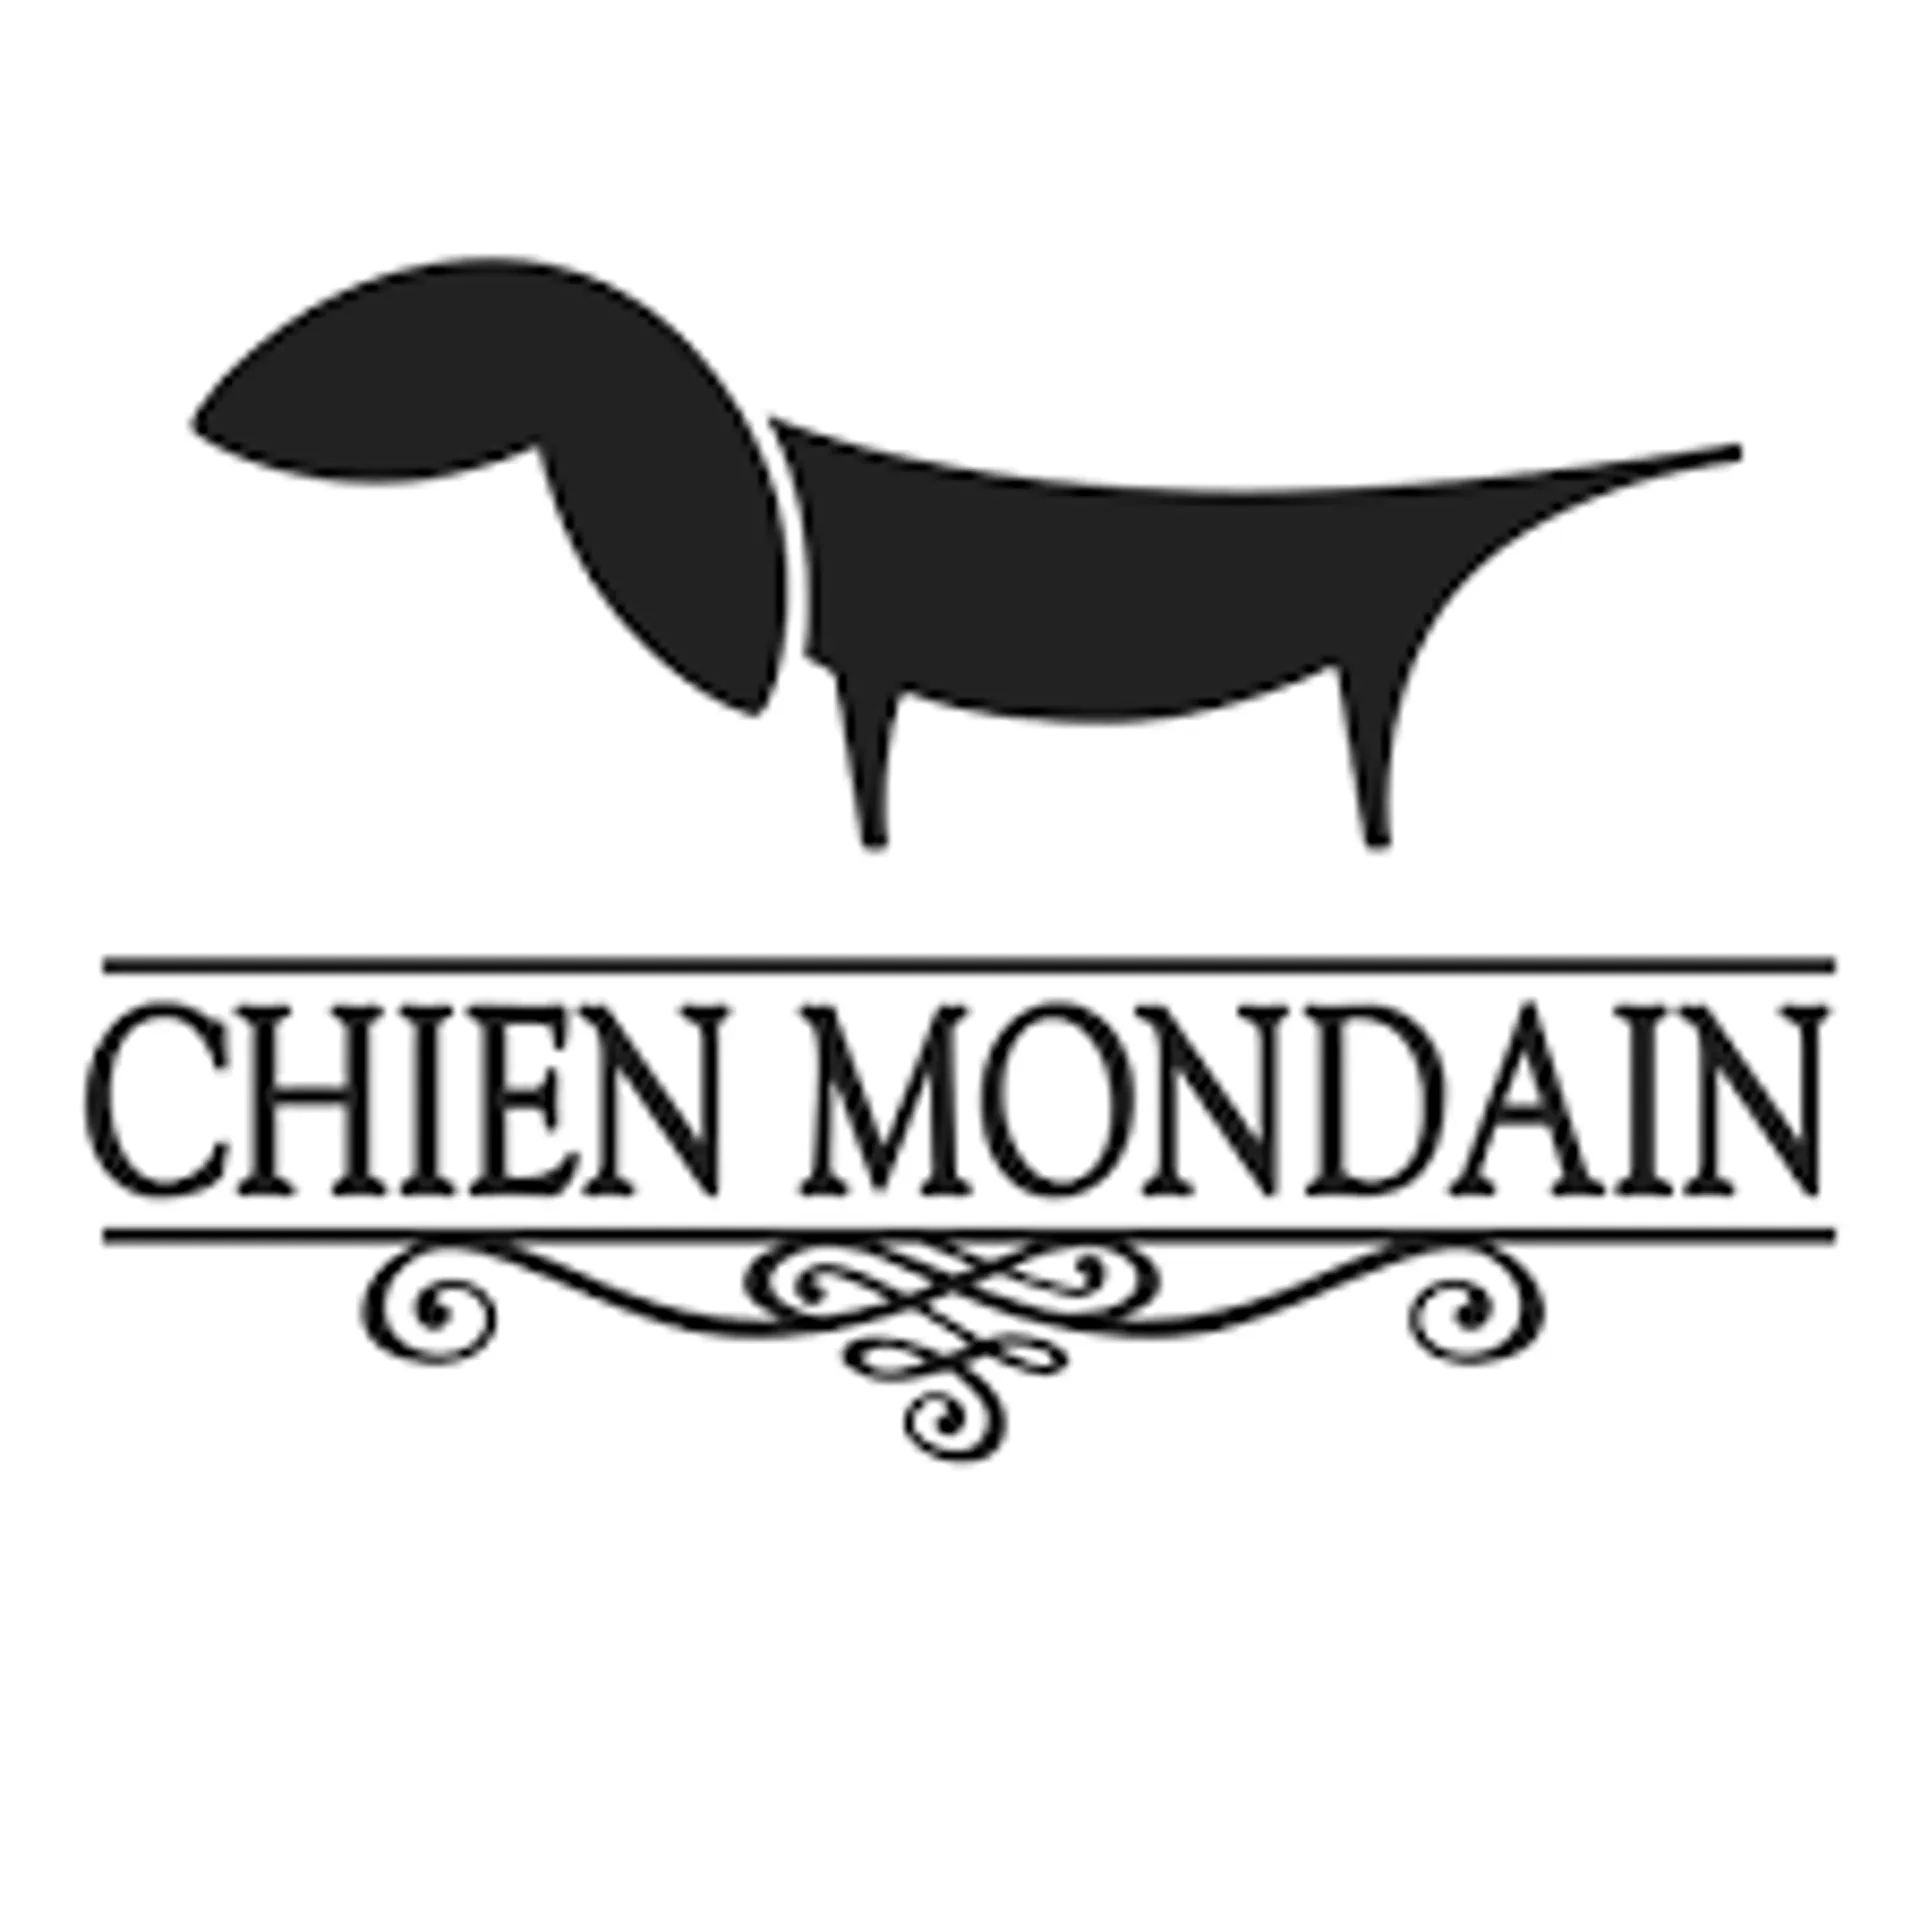 CHIEN MONDAIN logo de circulaires